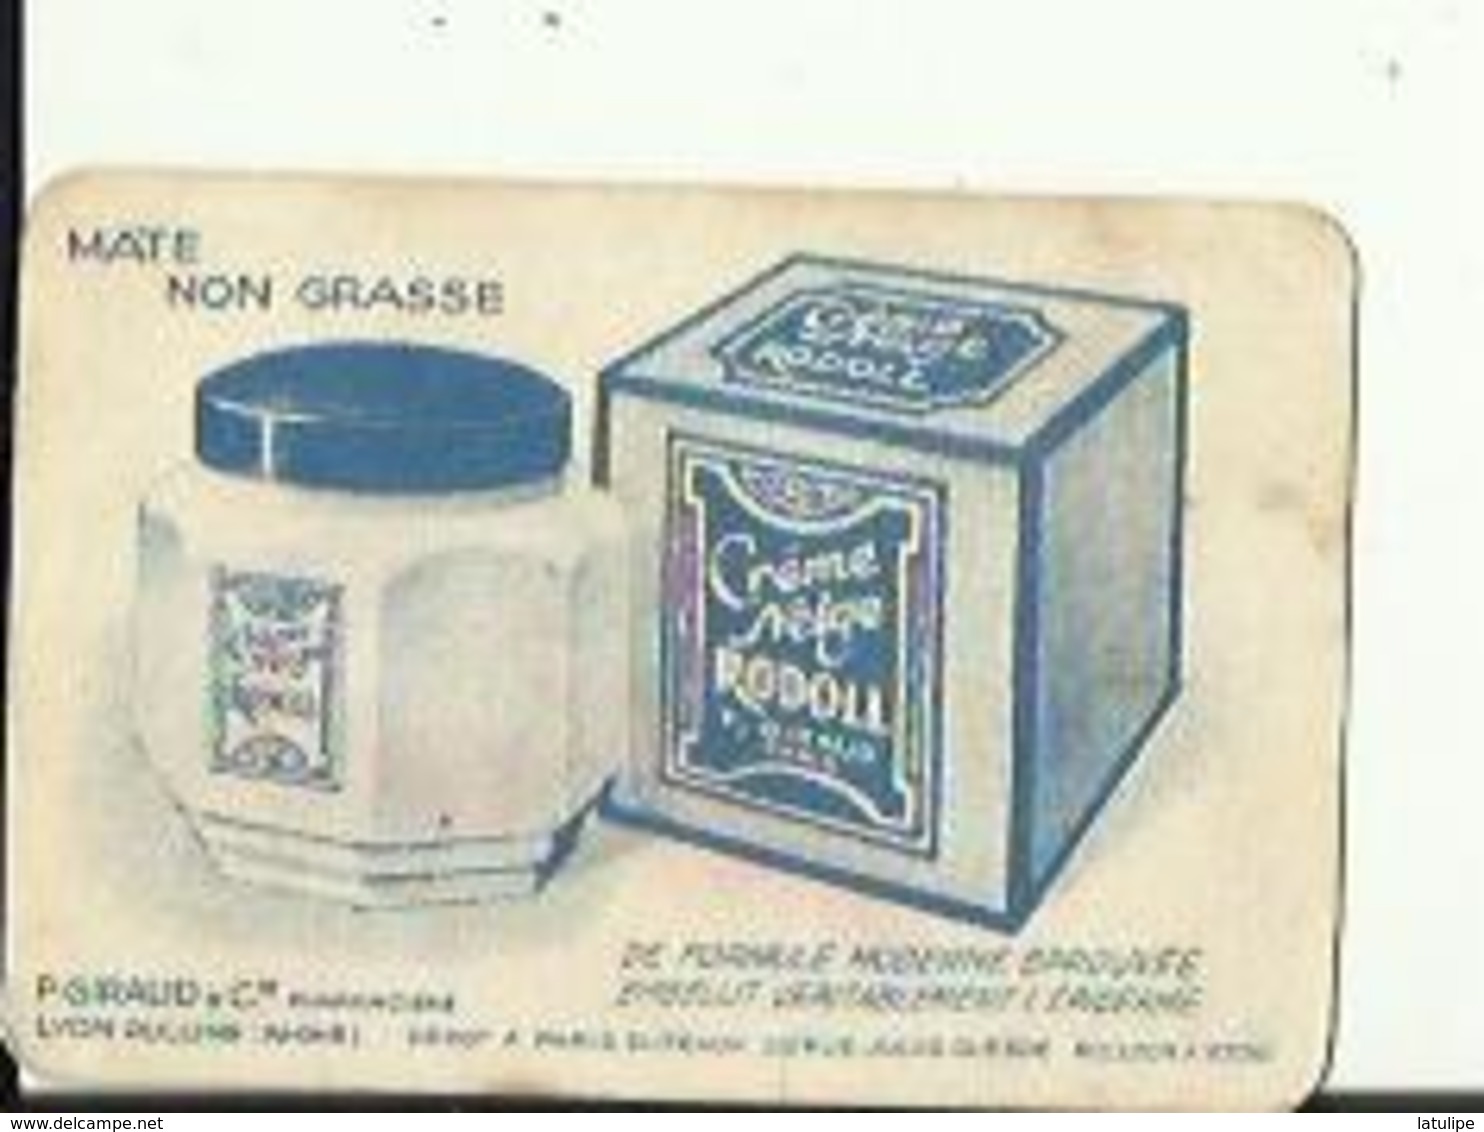 Petite  Carte De Creme Neige Et Savon  RODOLL De P  GIRAUD&Cie Pharmacien A OULLINS 69 - Produits De Beauté